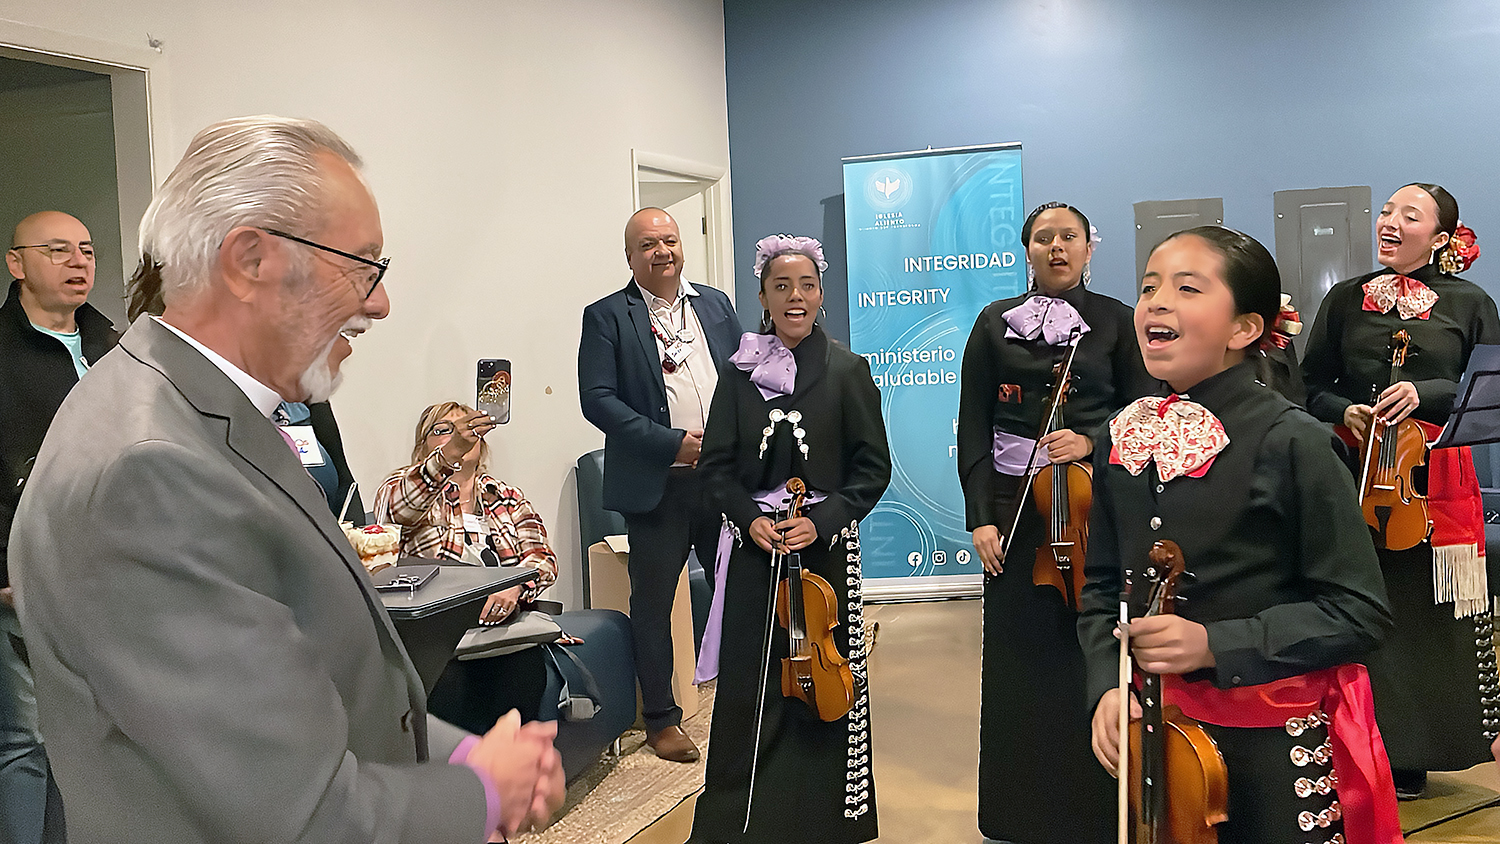 O Bispo Elias Galvan foi recebido de forma surpresa com a melodia de “Las Mañanitas” por um mariachi formado por meninas de uma família de músicos e cantores, ao chegar à Primeira Igreja Metodista Unida de Phoenix, onde havia sido pastor. 